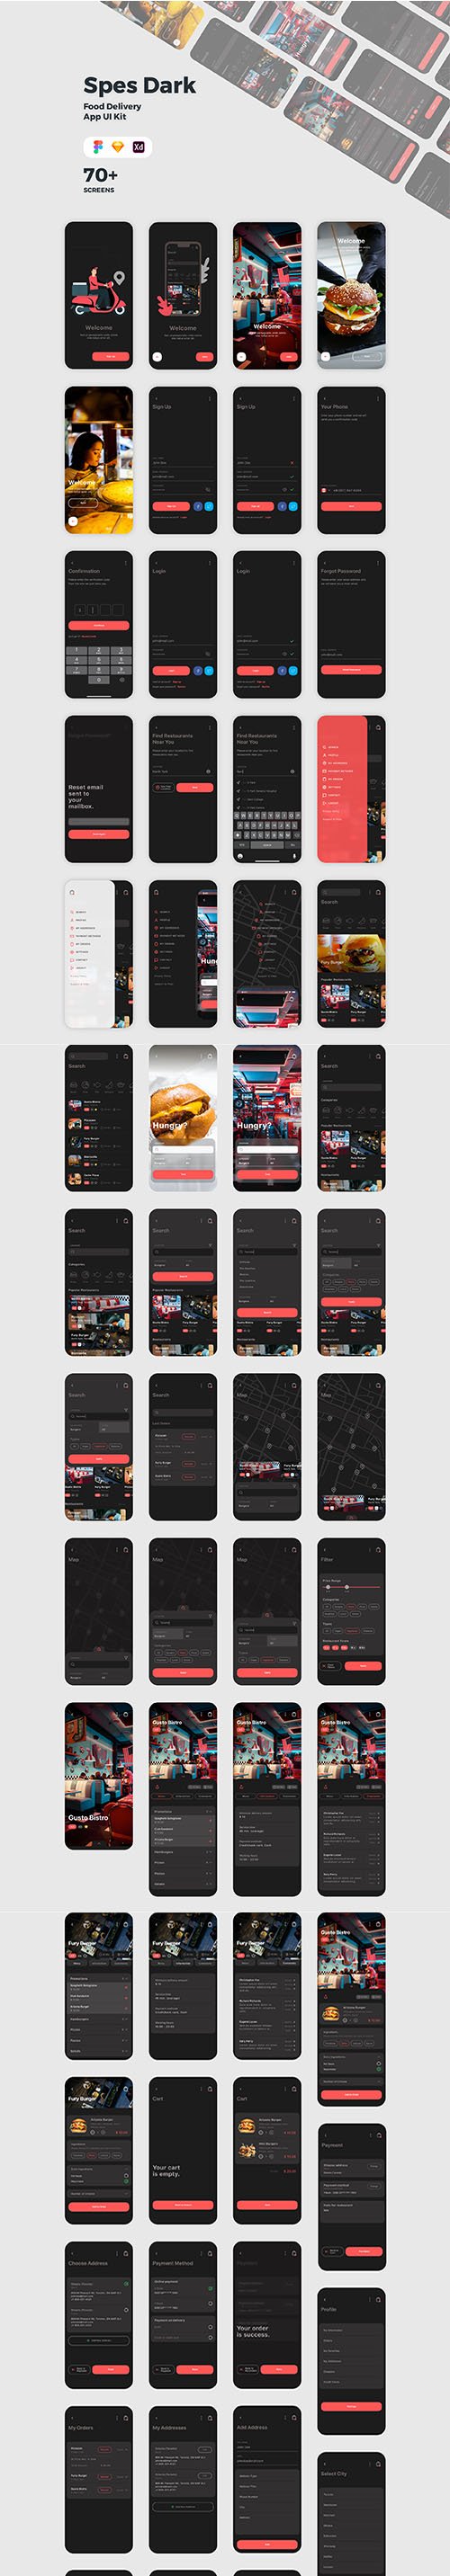 Spes Dark Food Delivery App UI Kit